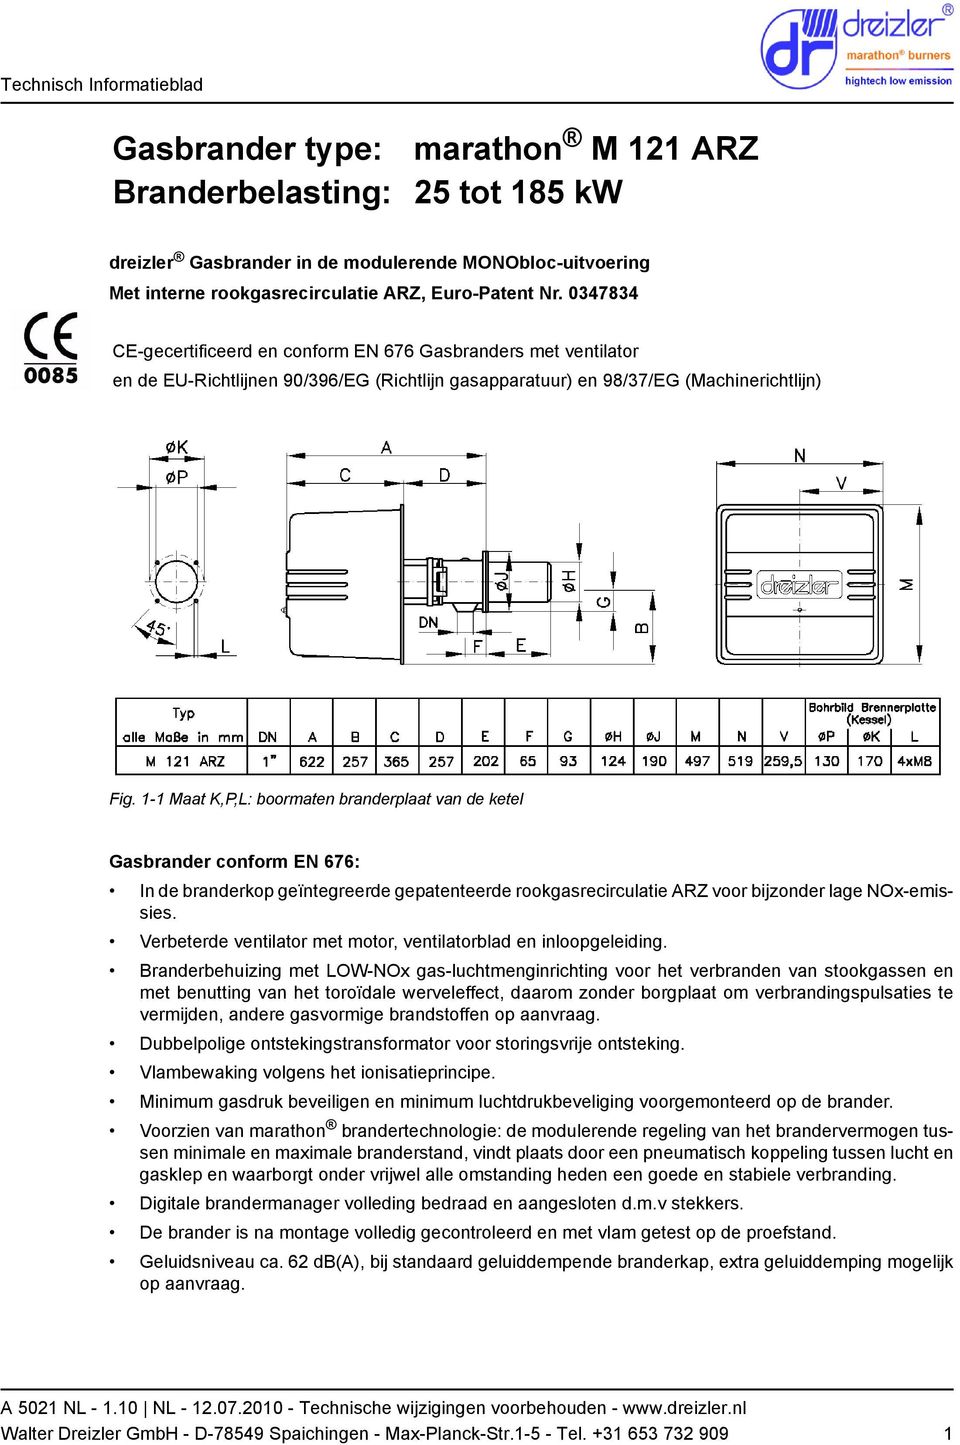 1-1 Maat K,P,L: boormaten branderplaat van de ketel Gasbrander conform EN 676: In de branderkop geïntegreerde gepatenteerde rookgasrecirculatie ARZ voor bijzonder lage NOx-emissies.